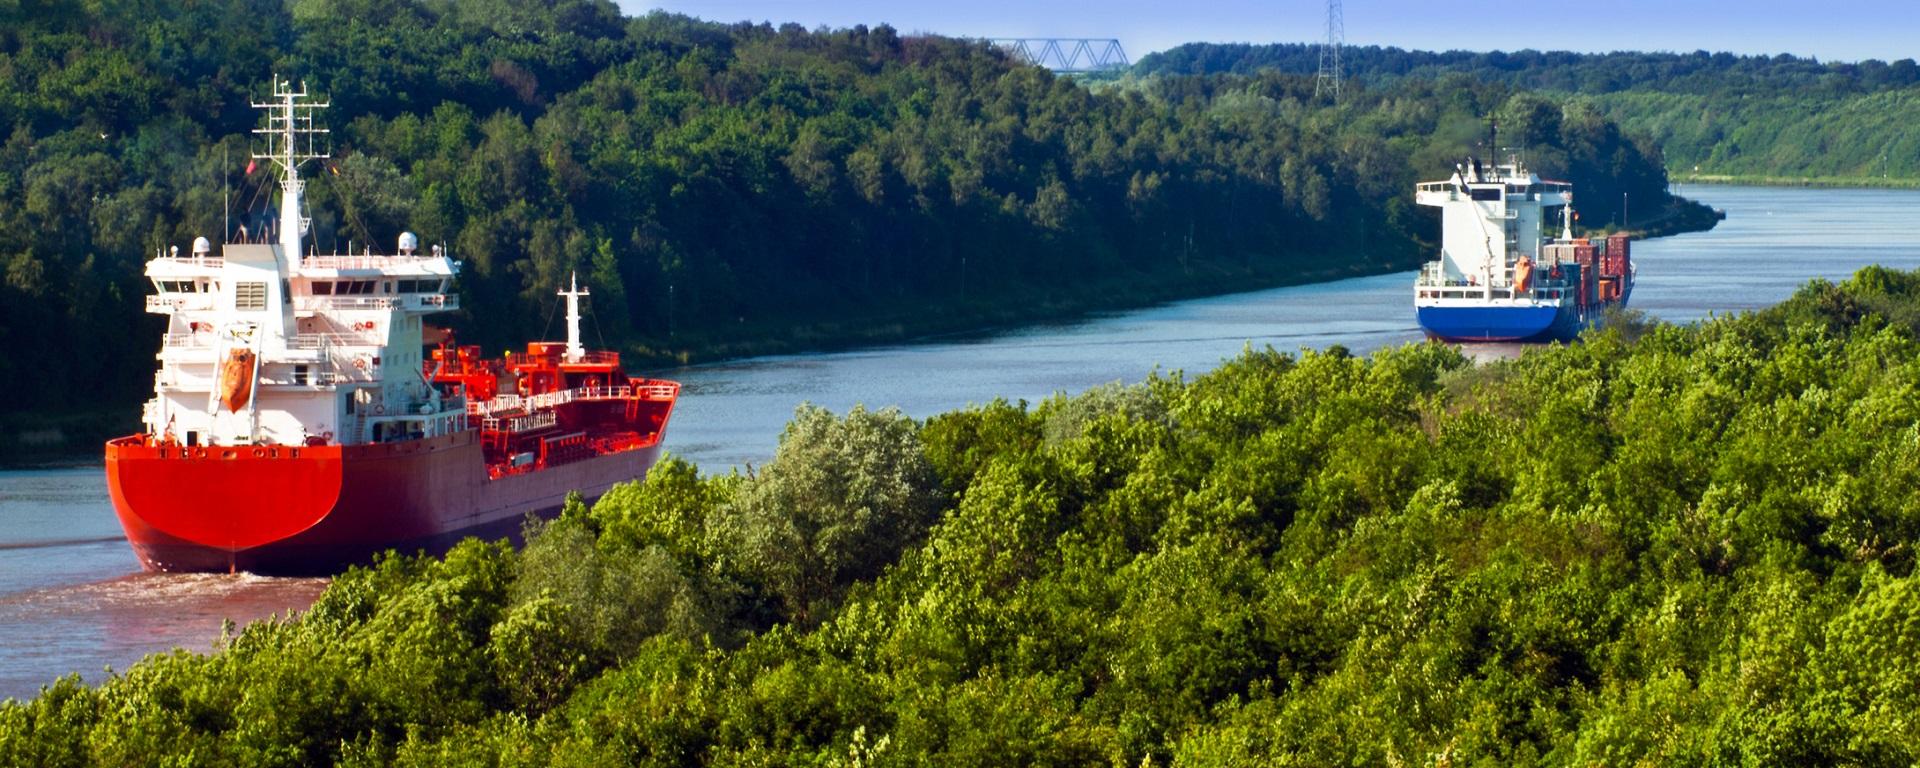 Der BVWP sieht unter anderem eine Vertiefung des Nord-Ostsee-Kanals vor. (Quelle: Adobe Stock / PhotoSG)